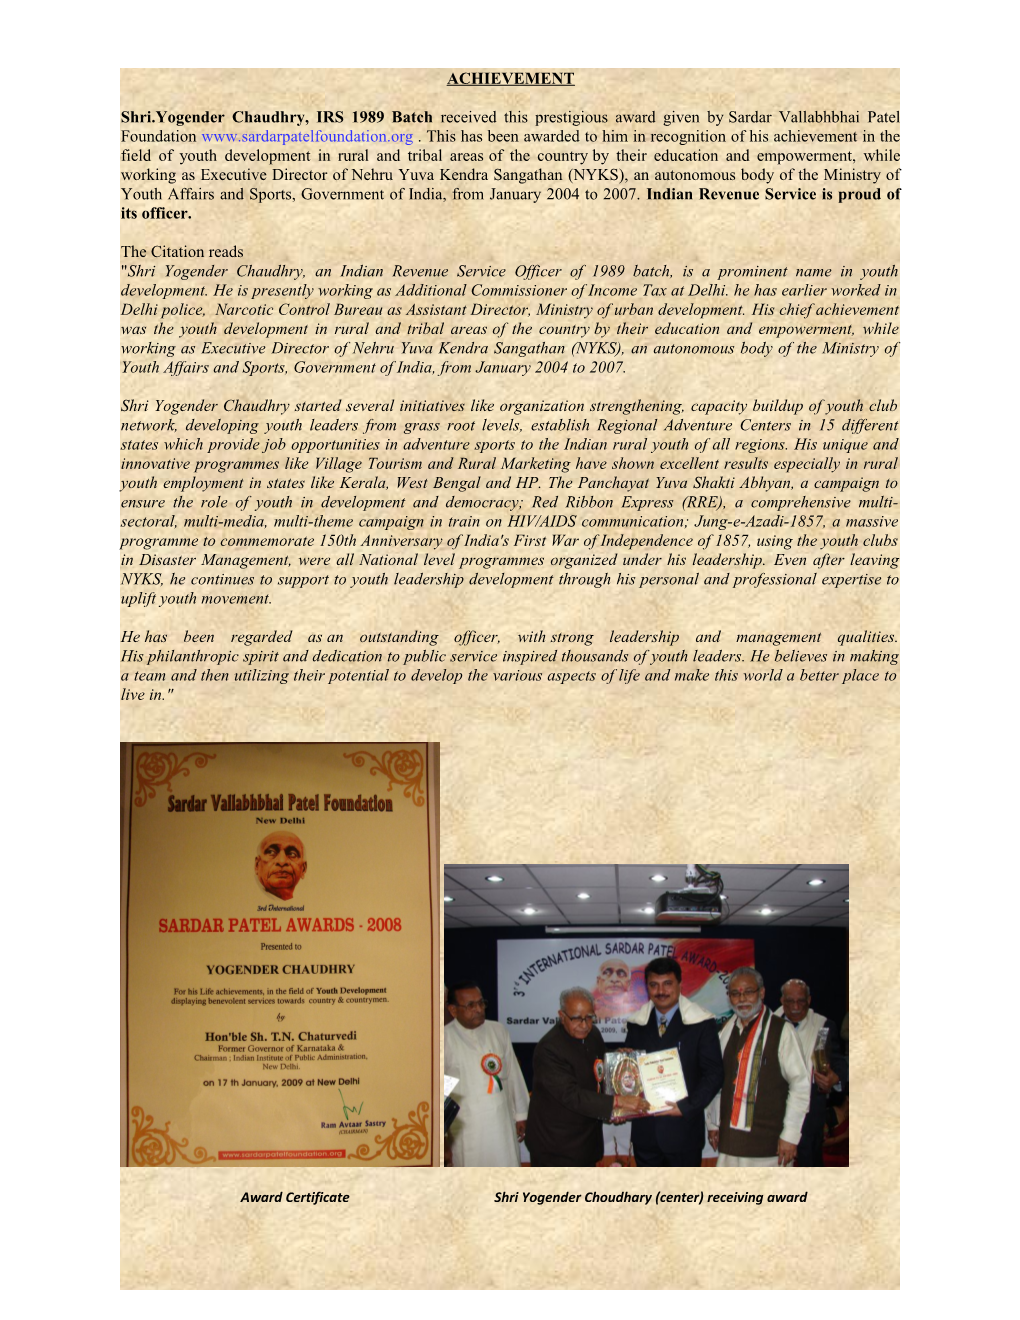 Shri.Yogender Chaudhry, IRS 1989 Batch Received This Prestigious Award Given Bysardar